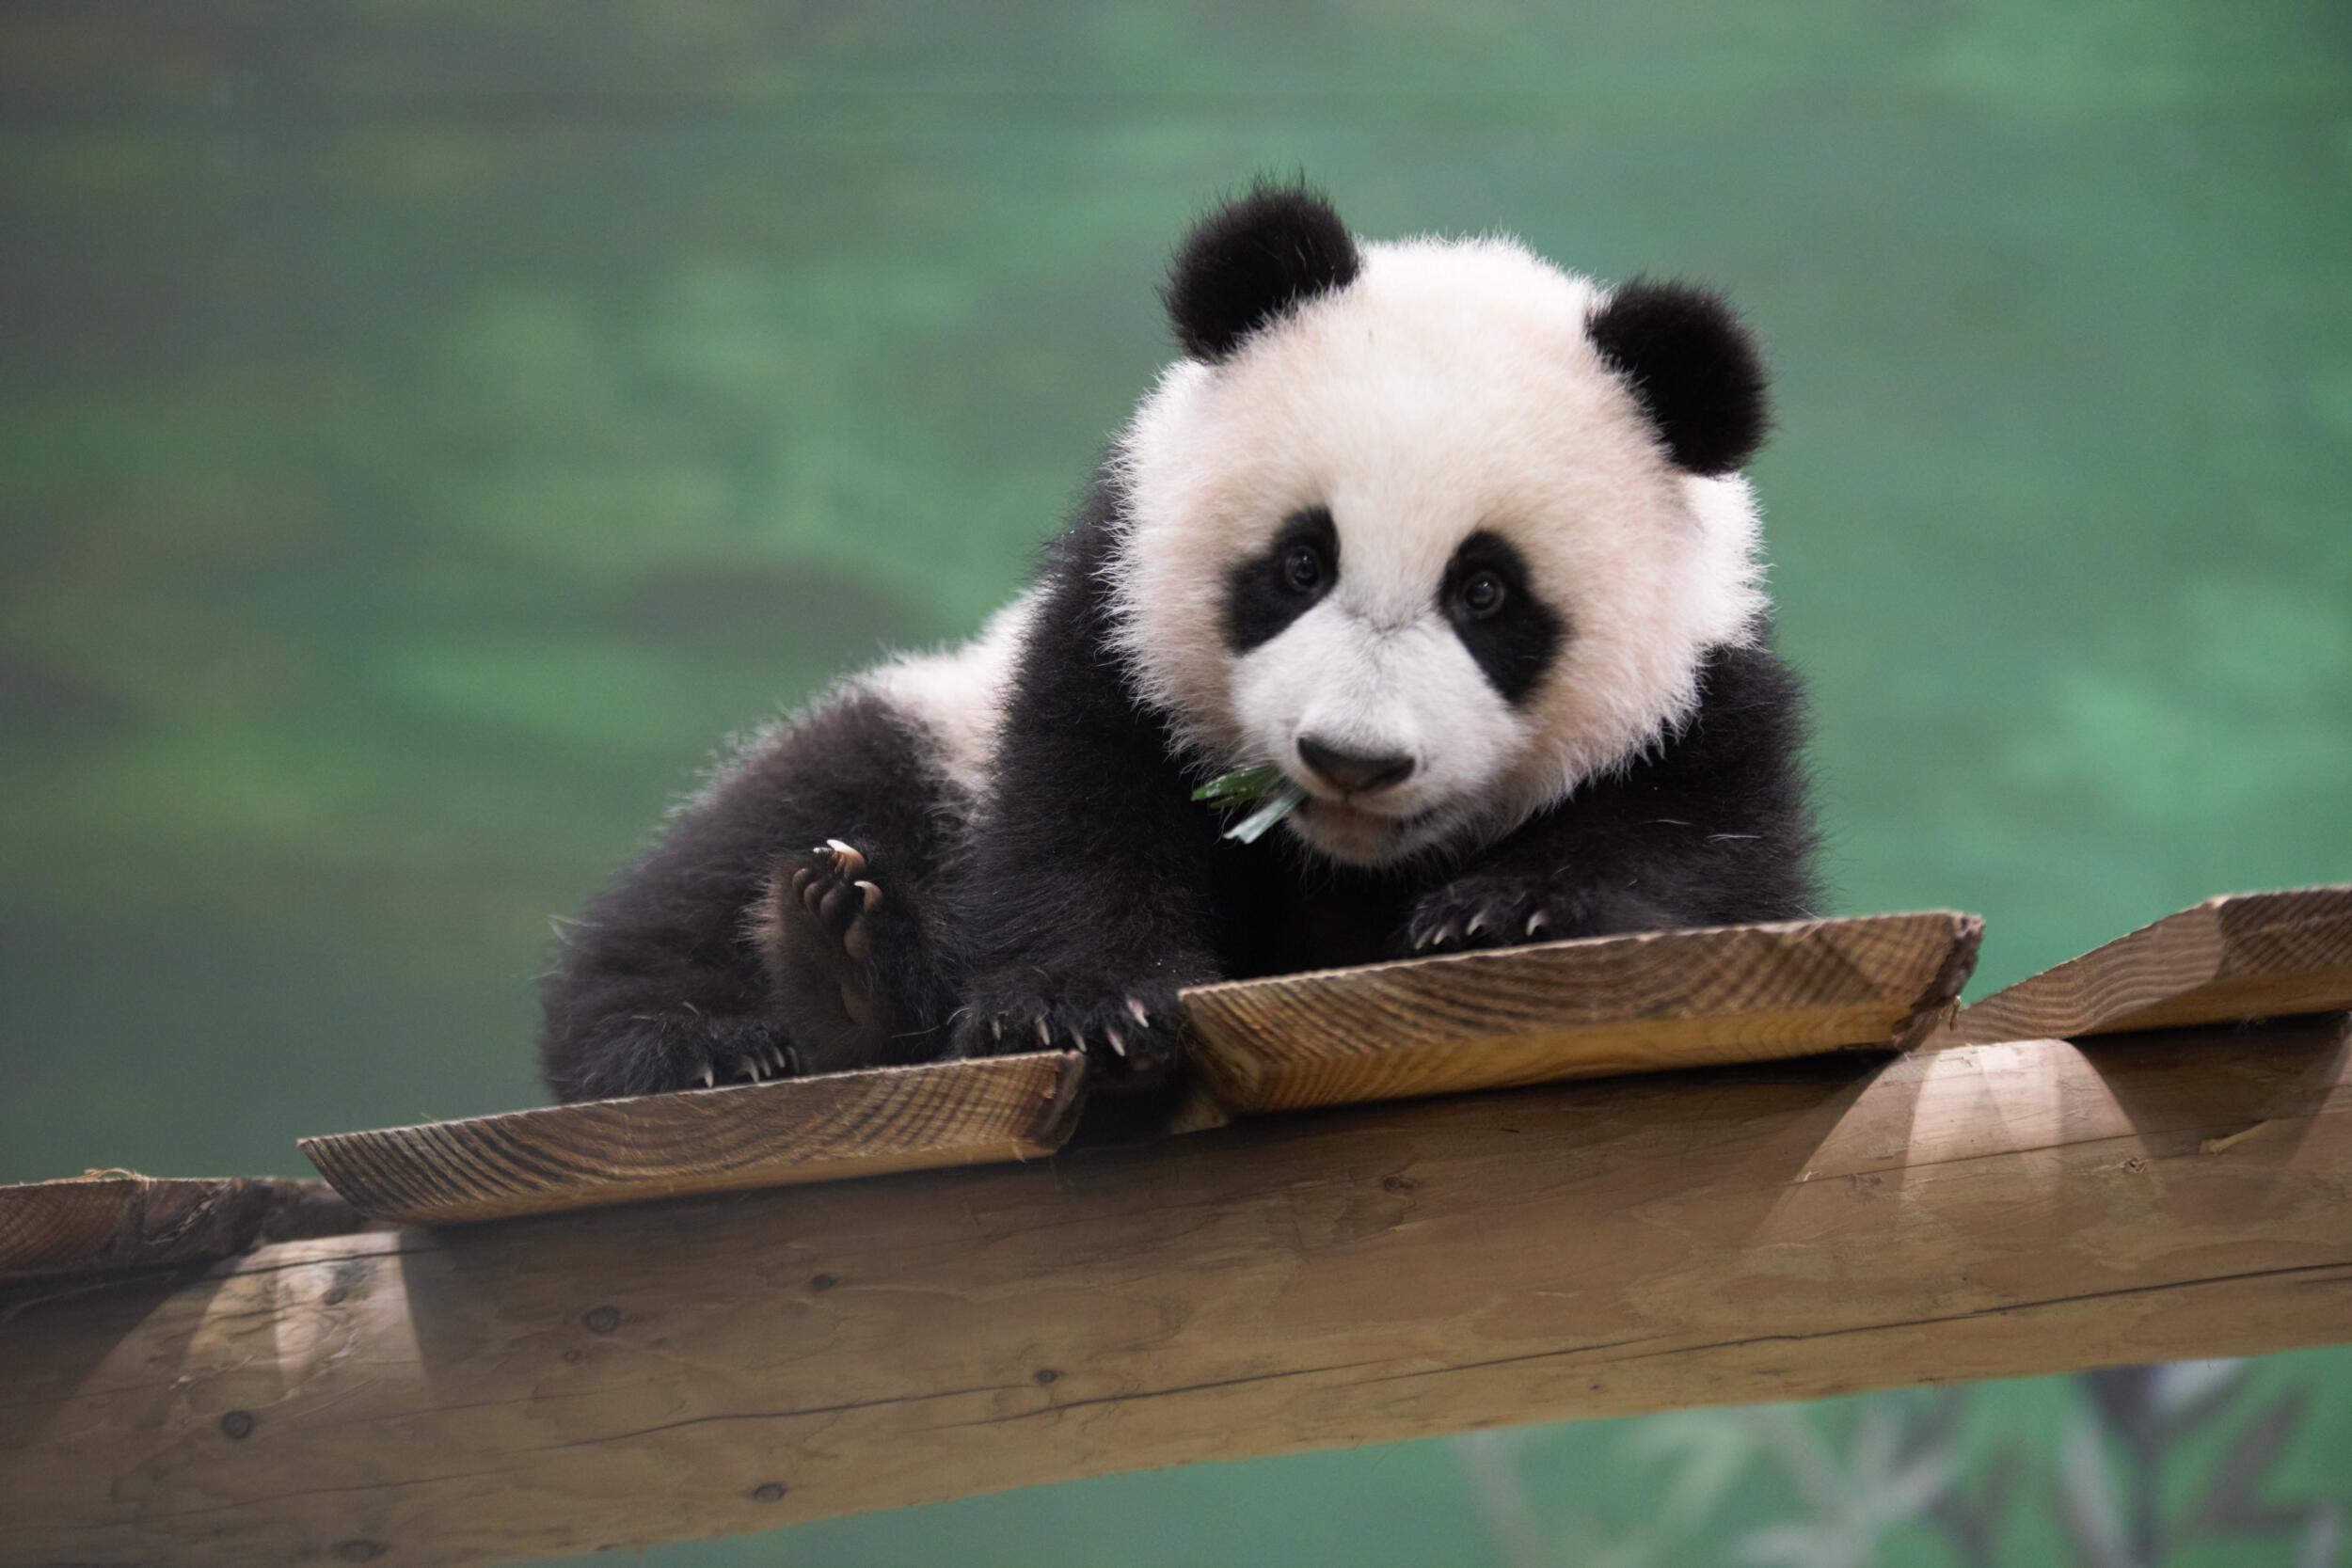 Baby panda Fan Xing